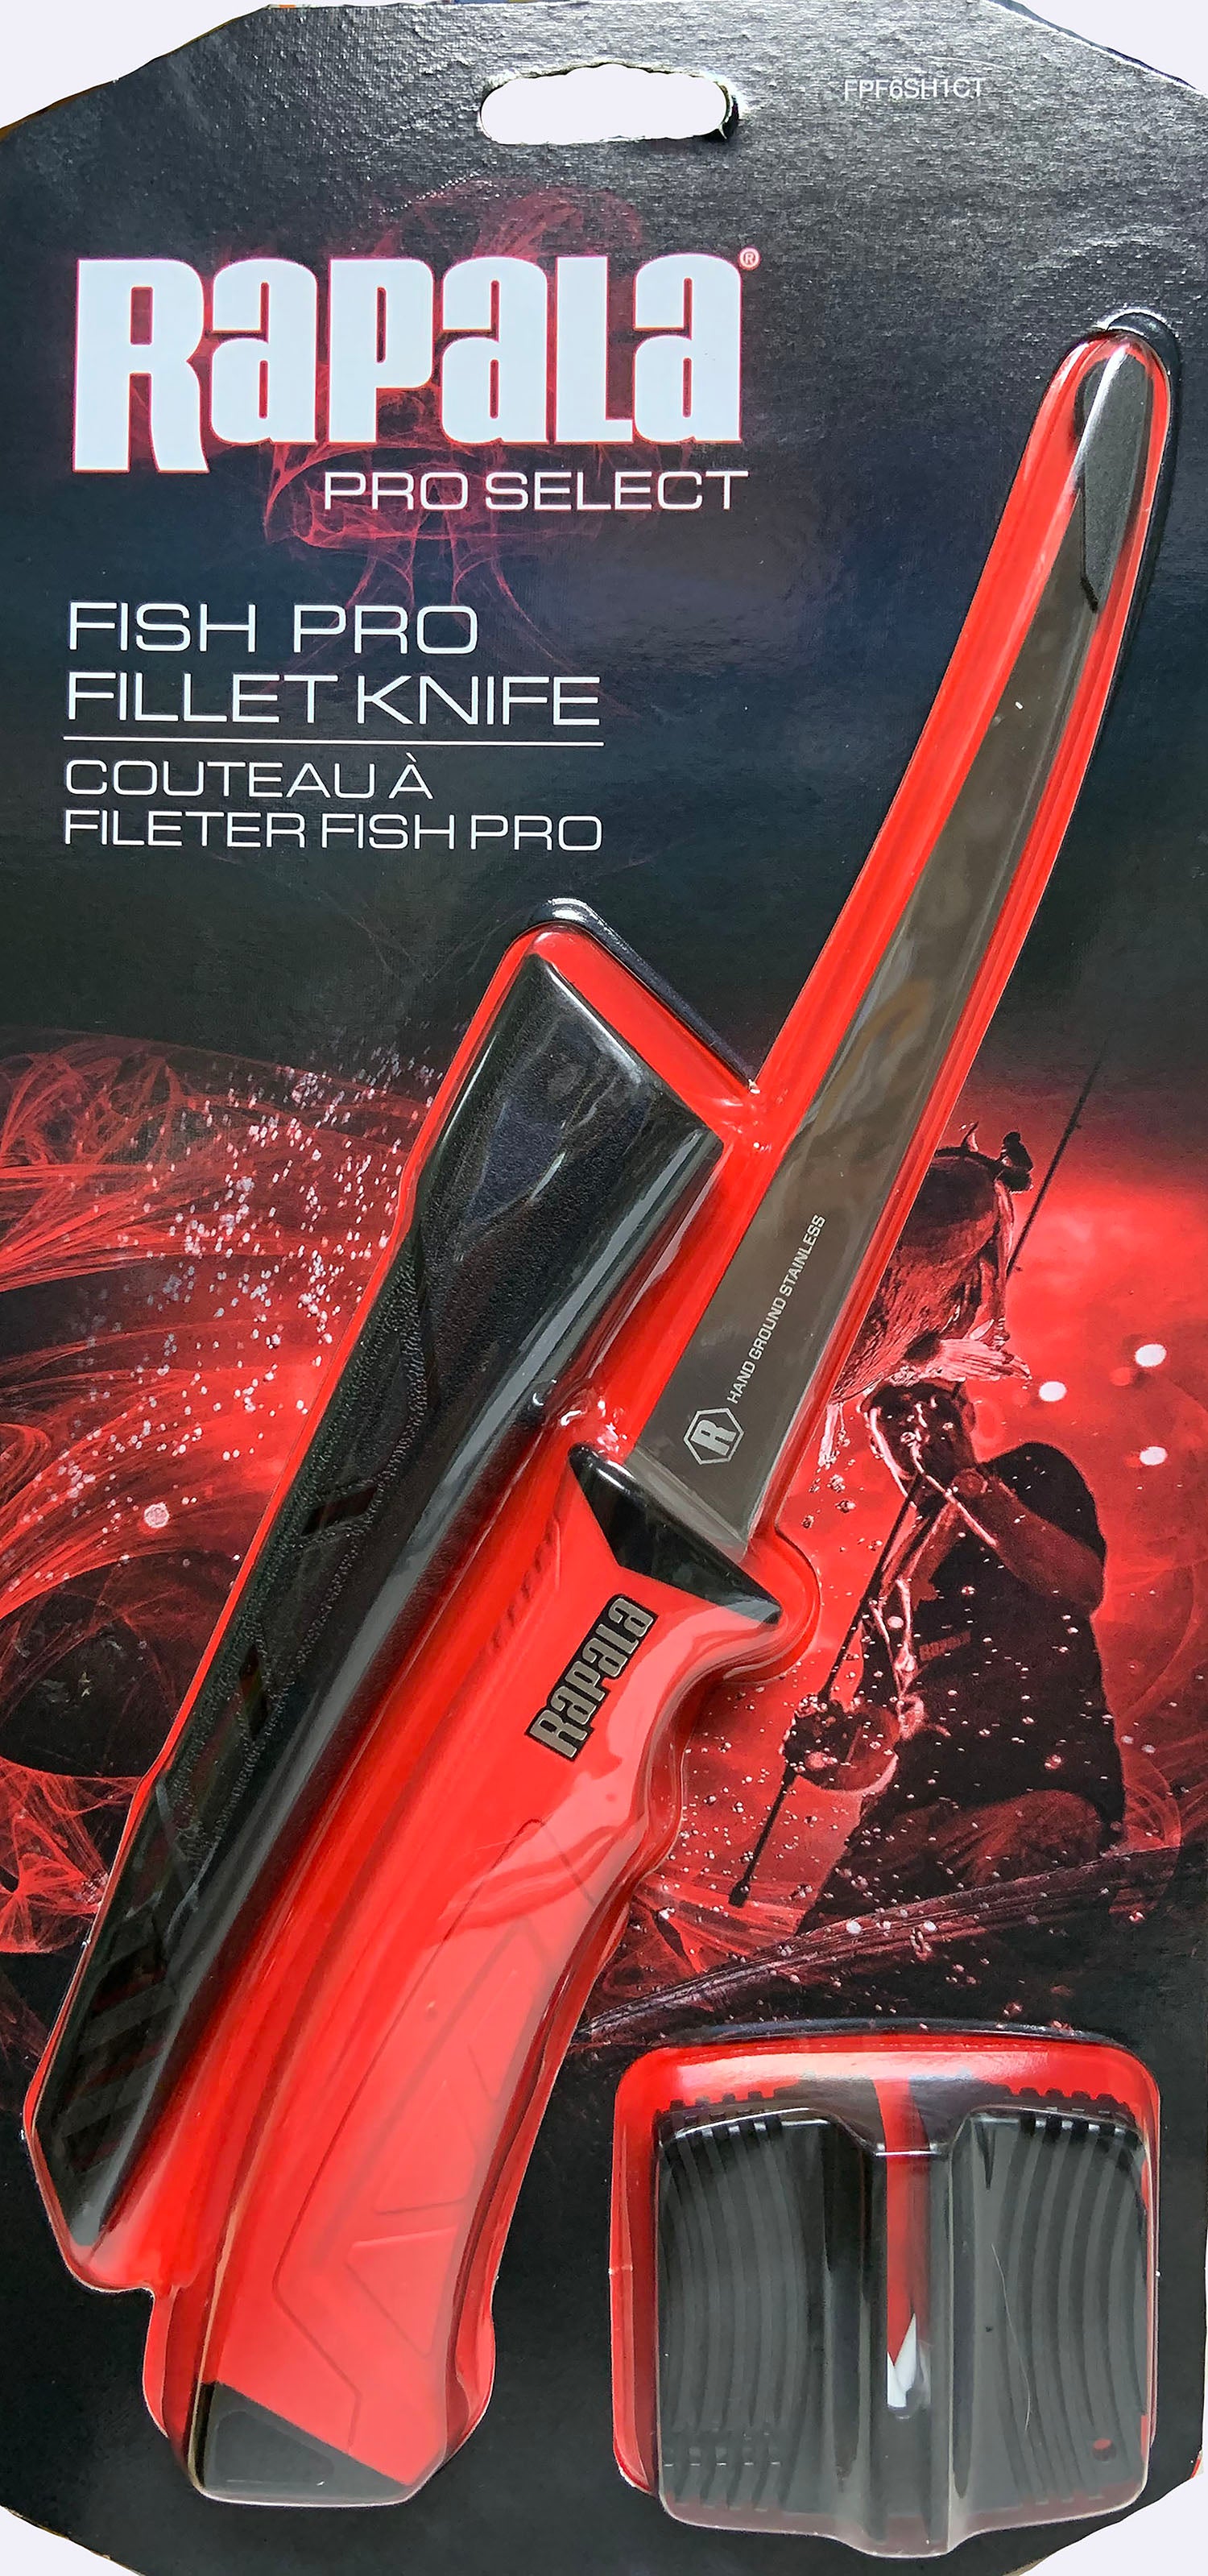 Rapala 6 Fish Pro Fillet Knife